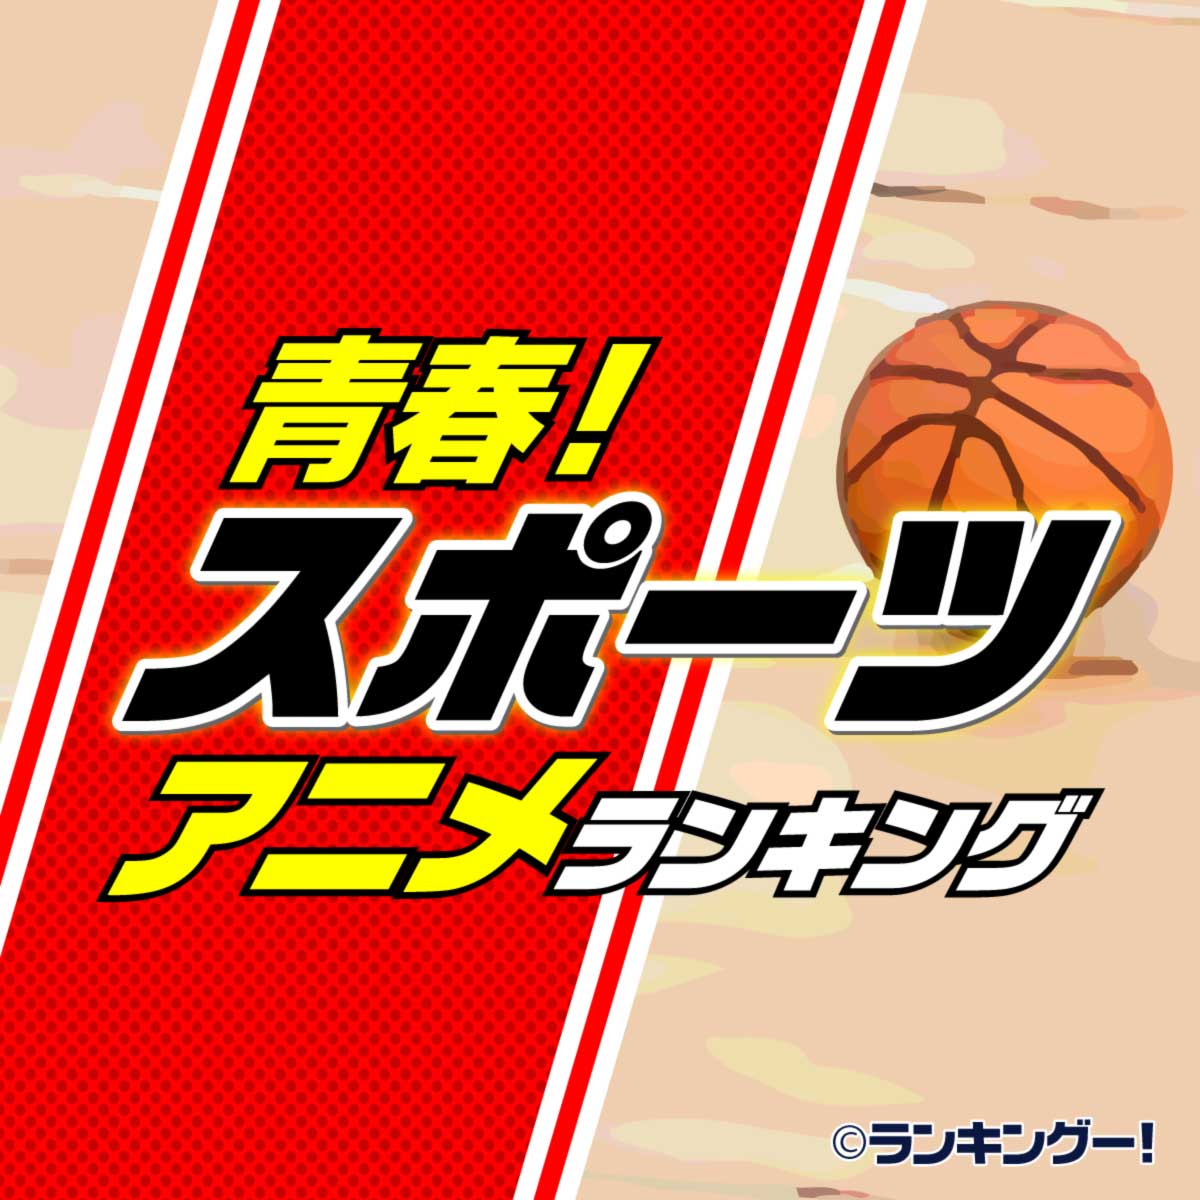 アニメ 人気 スポーツ スポーツアニメランキング